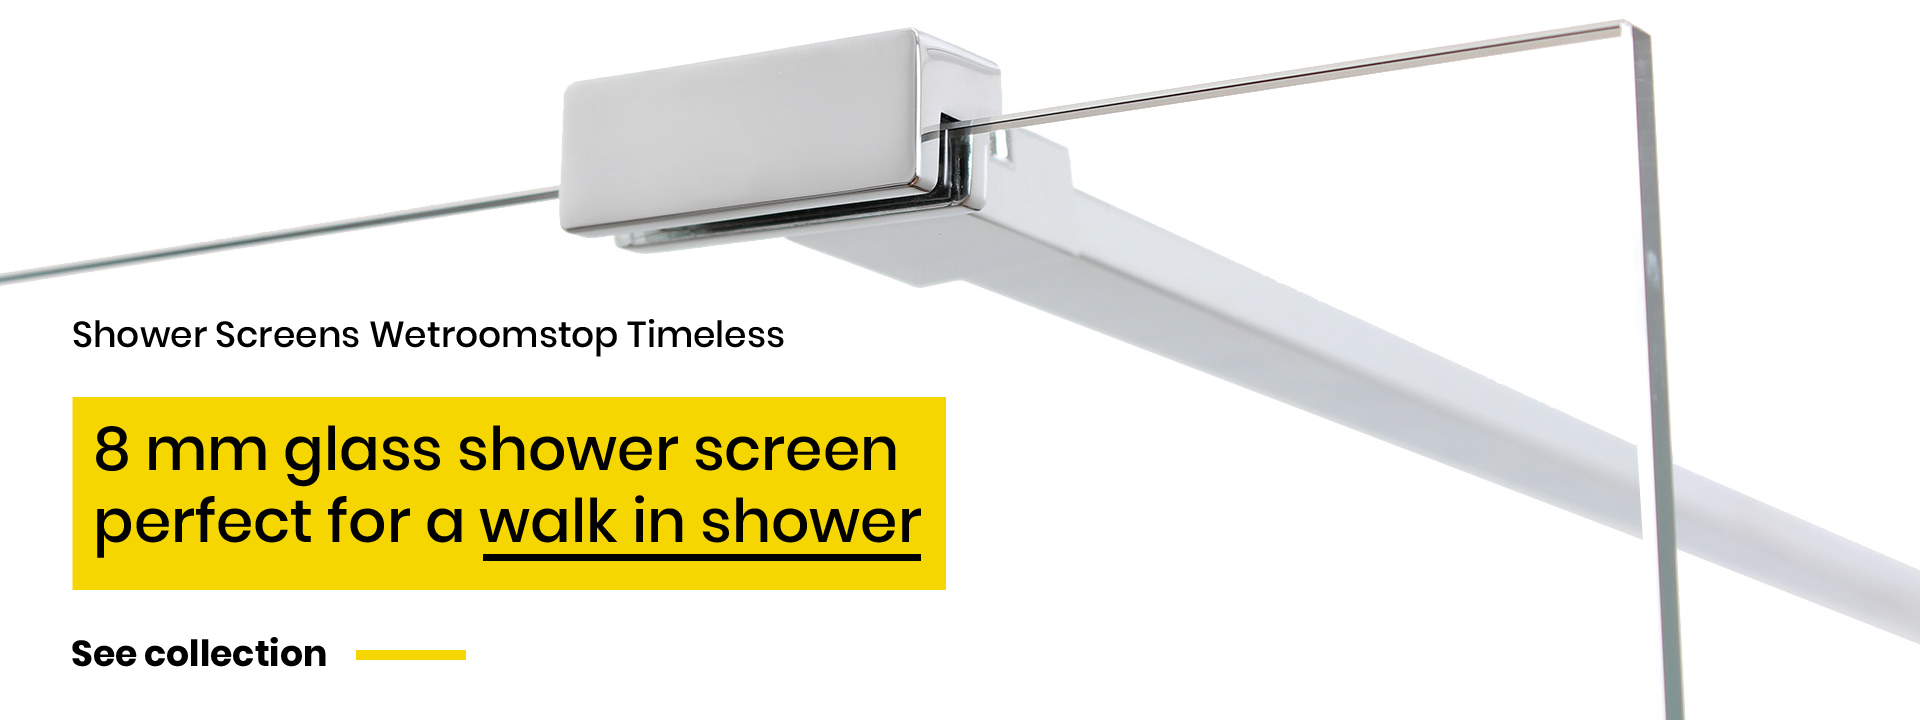 Walk In Shower Screens